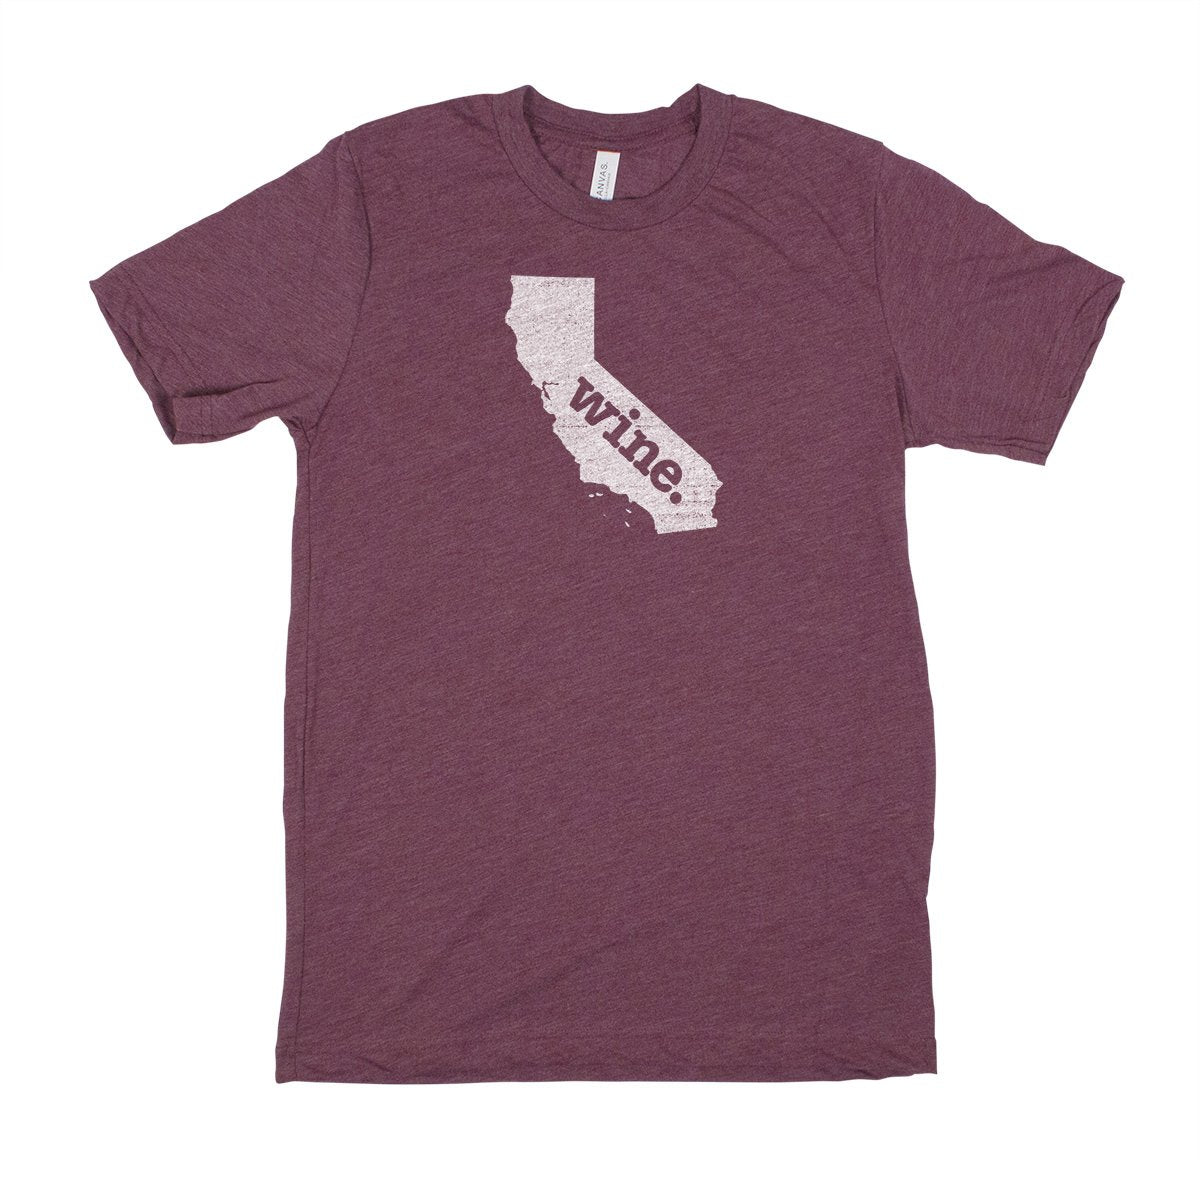 camp. Men's Unisex T-Shirt - Virginia